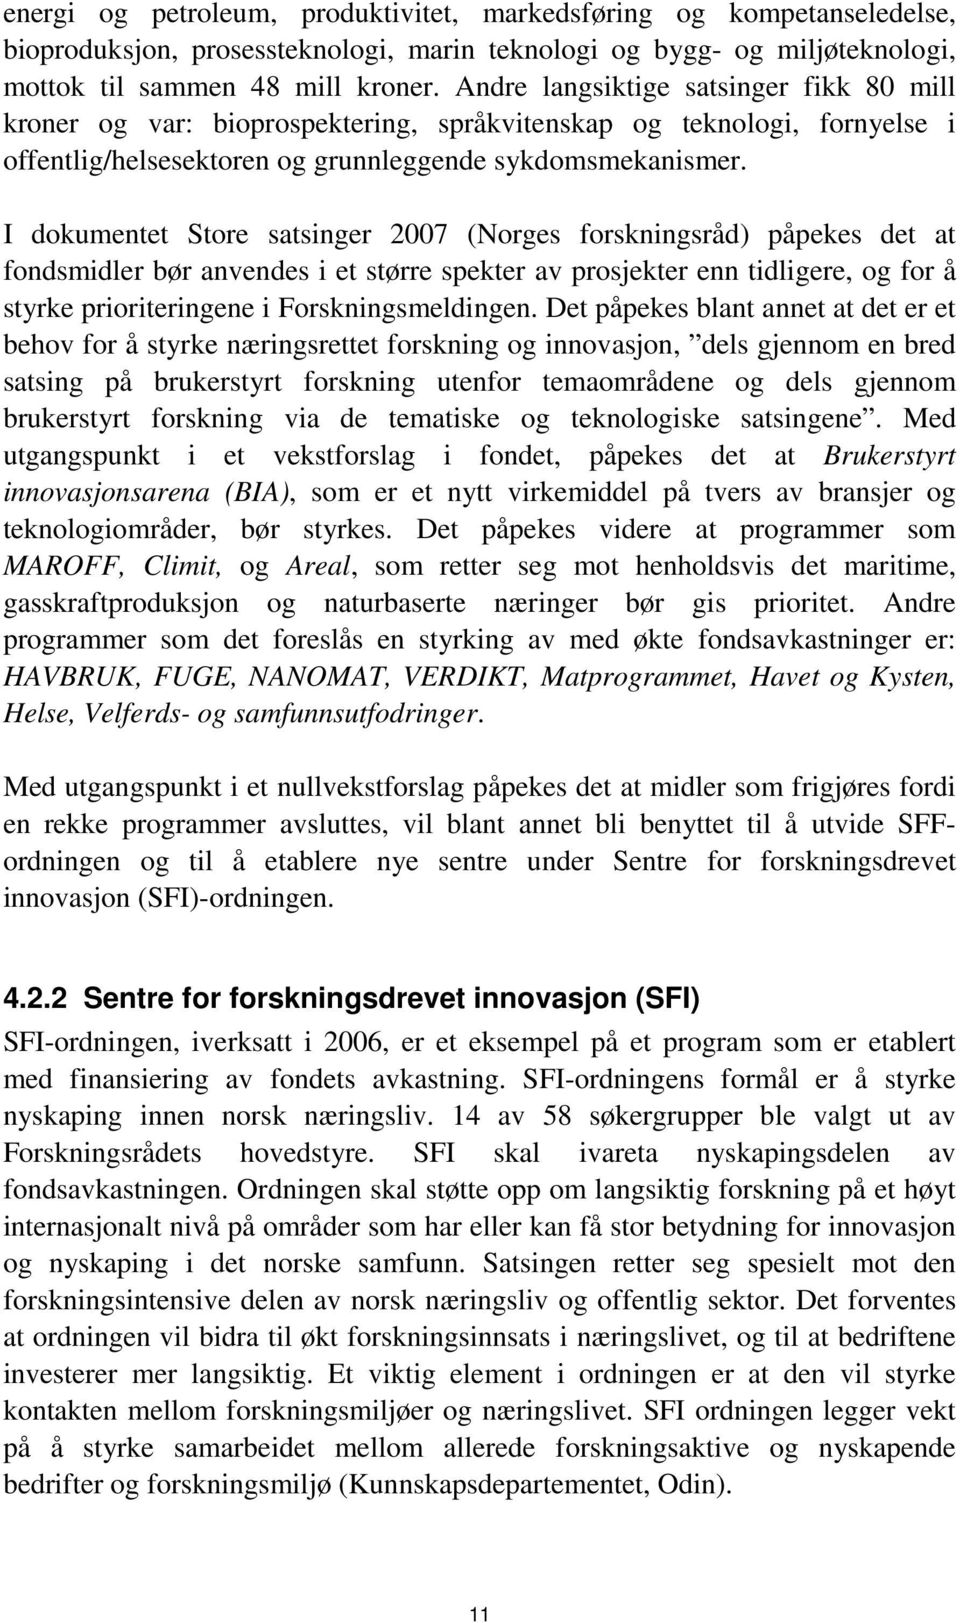 I dokumentet Store satsinger 2007 (Norges forskningsråd) påpekes det at fondsmidler bør anvendes i et større spekter av prosjekter enn tidligere, og for å styrke prioriteringene i Forskningsmeldingen.